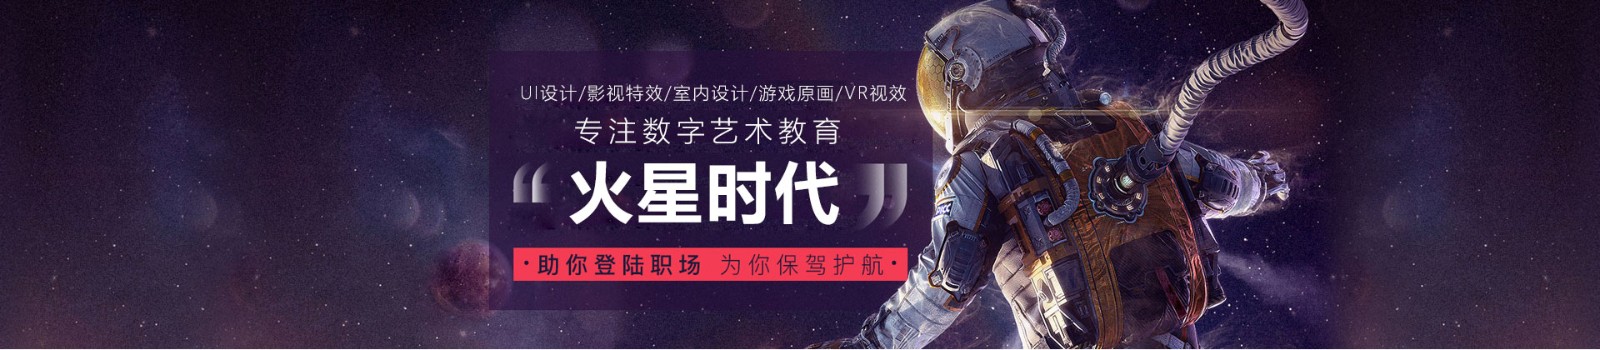 武汉火星时代培训学校 横幅广告